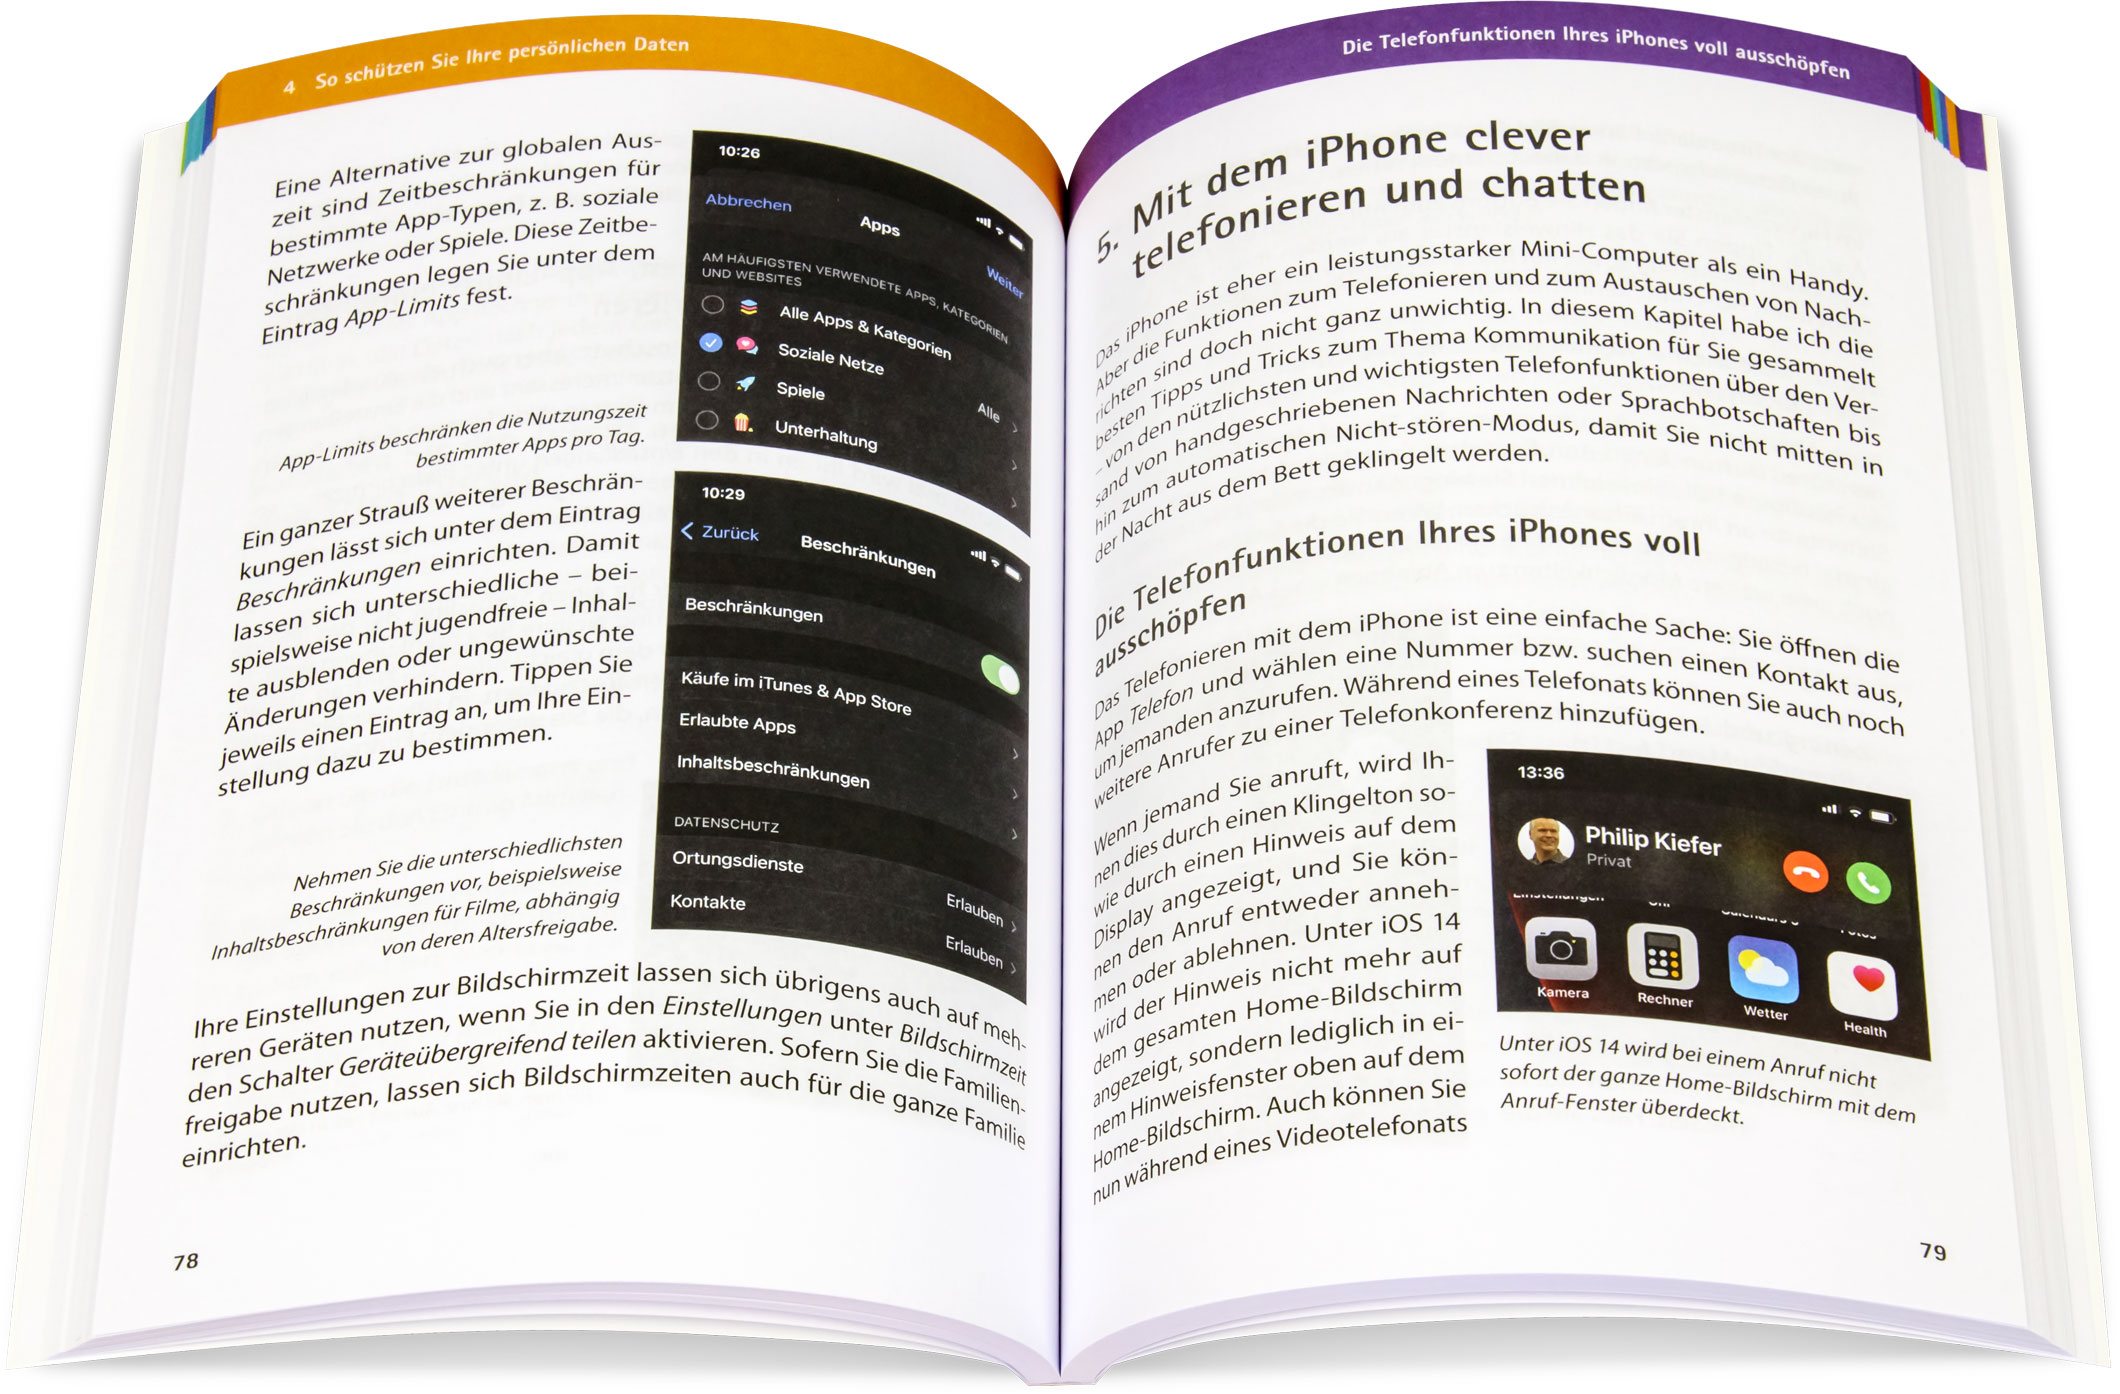 Blick ins Buch: iPhone - Tipps und Tricks zu iOS 14